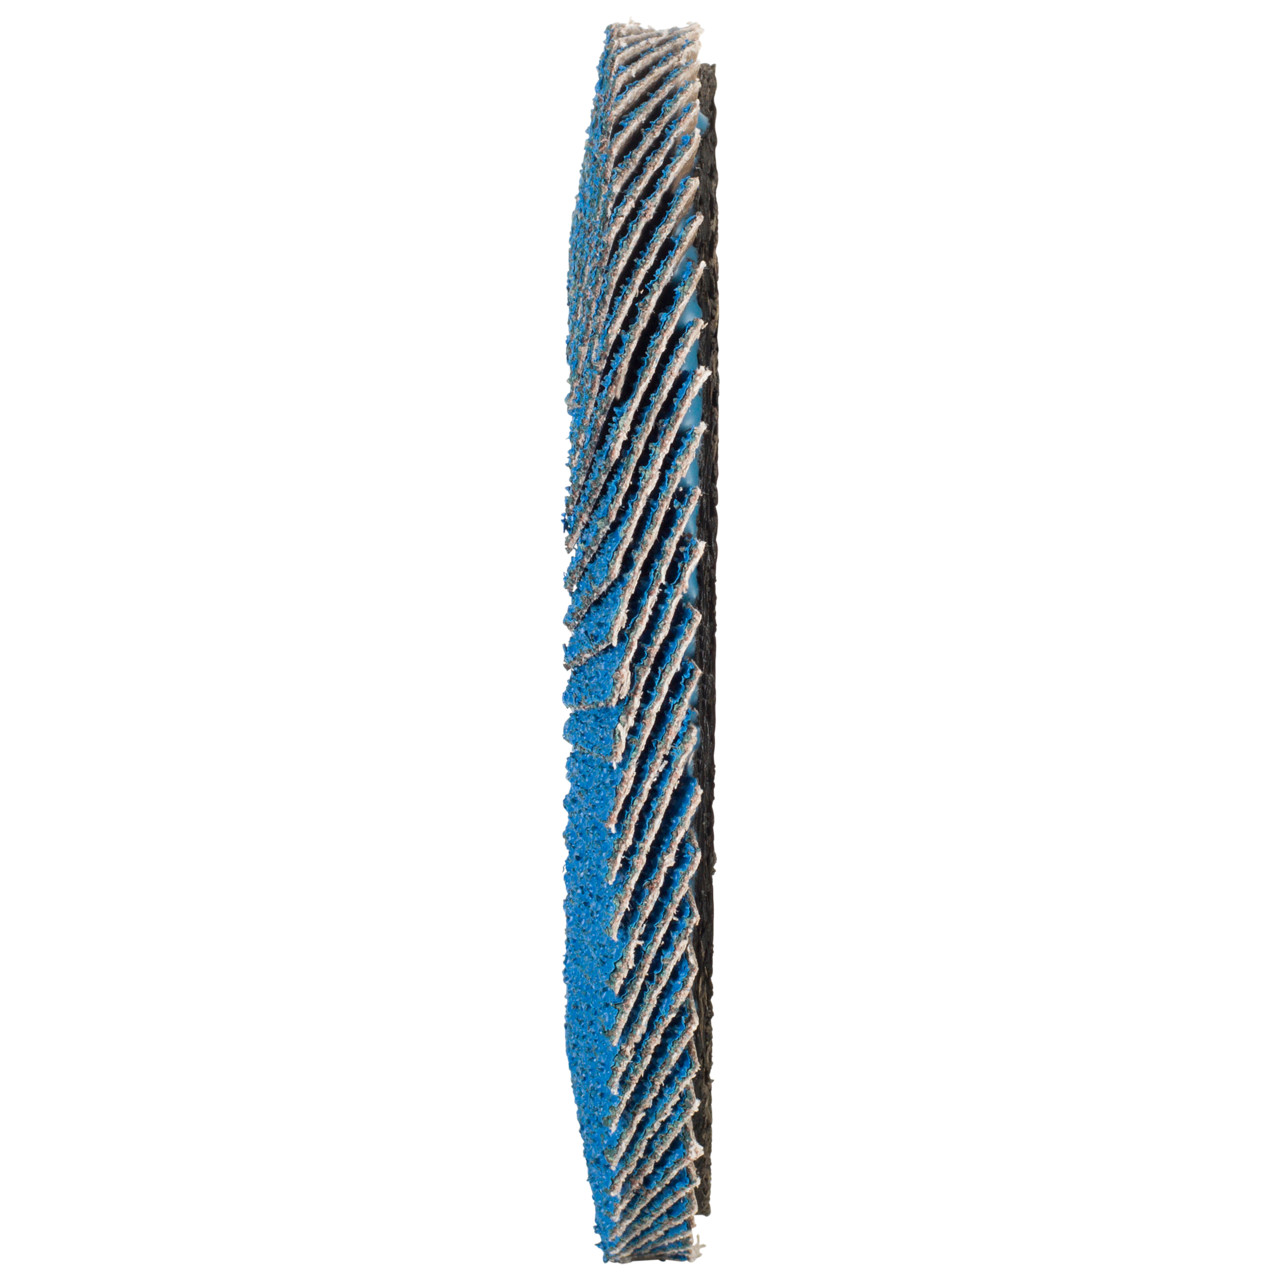 TYROLIT Fächerscheibe DxH 115x22,2 FASTCUT für Stahl & Edelstahl, P60, Form: 28N - gerade Ausführung (Kunststoffträgerkörper), Art. 458029